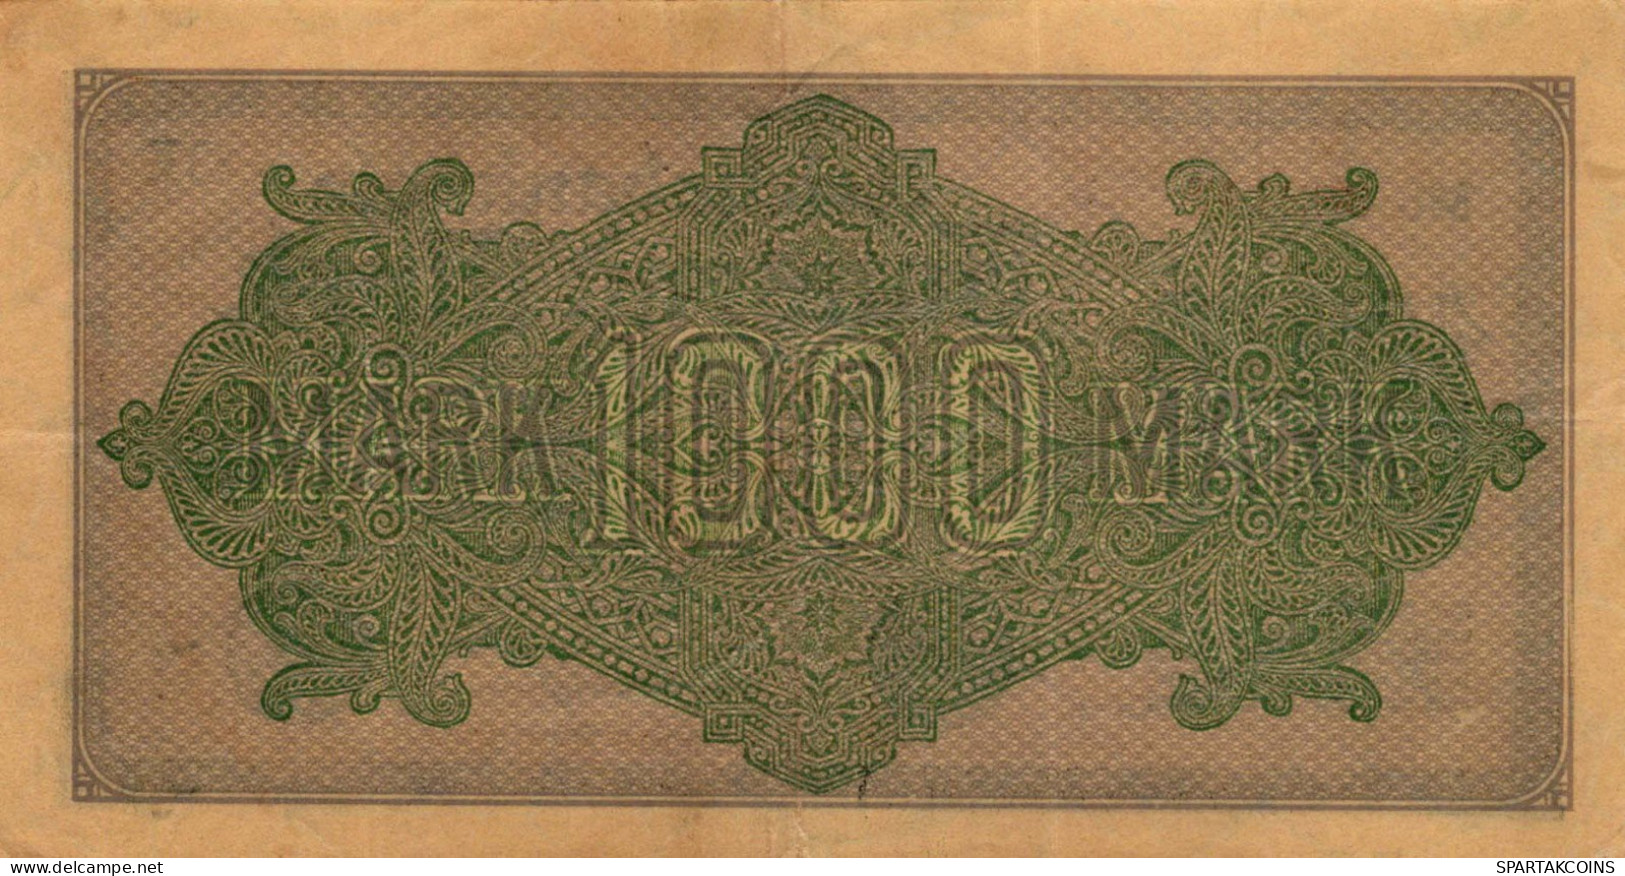 1000 MARK 1922 Stadt BERLIN DEUTSCHLAND Papiergeld Banknote #PL463 - [11] Emisiones Locales